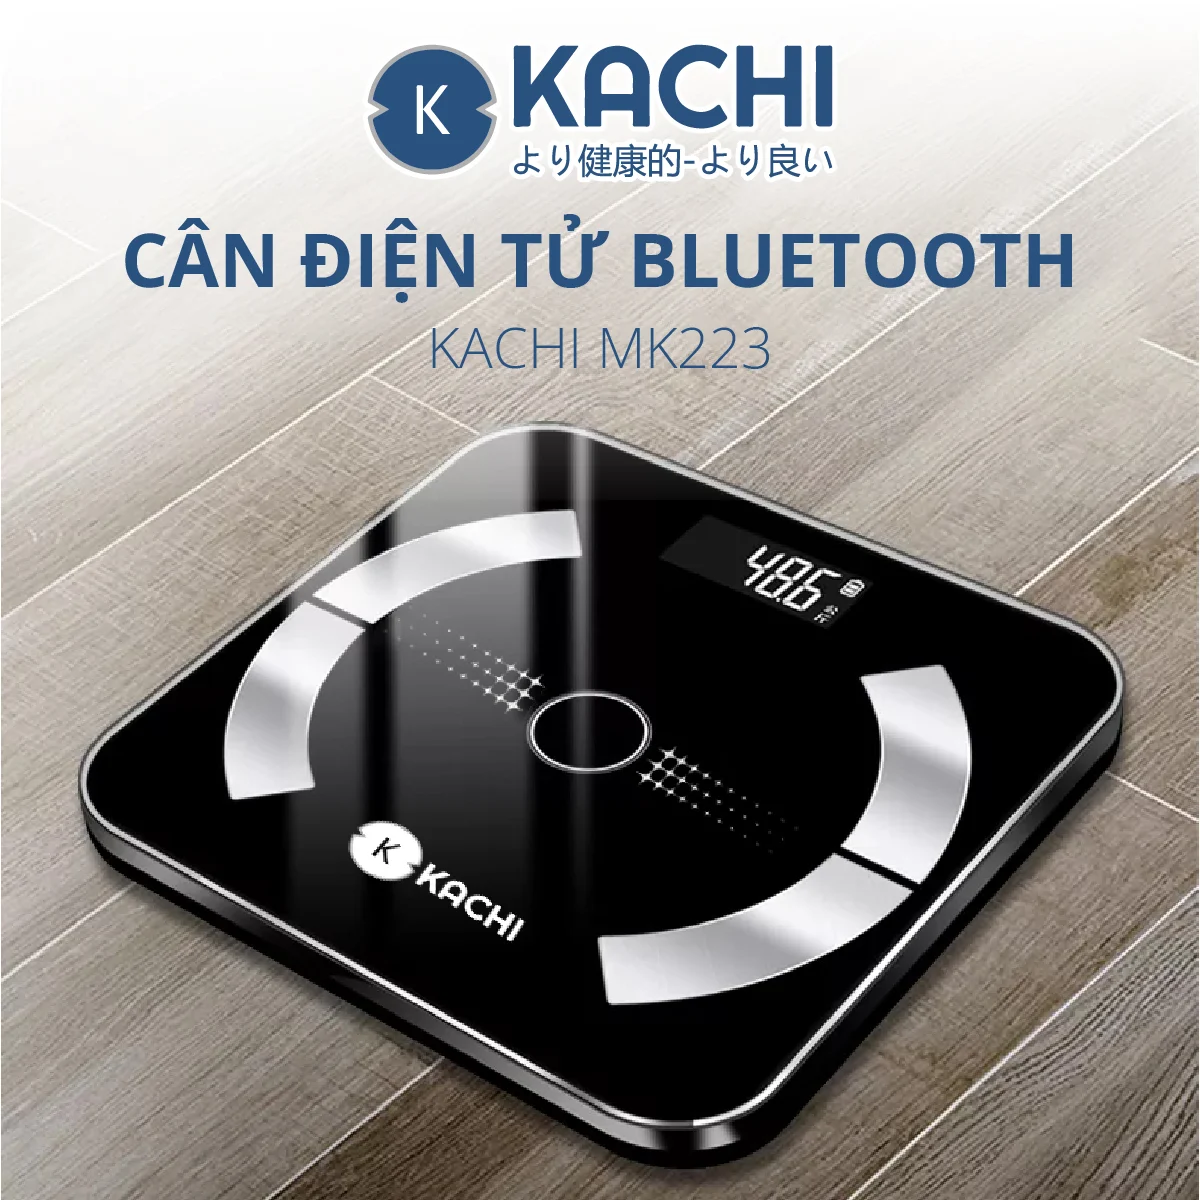 Cân điên tử bluetooth phân tích chỉ số cơ thể Kachi mk223